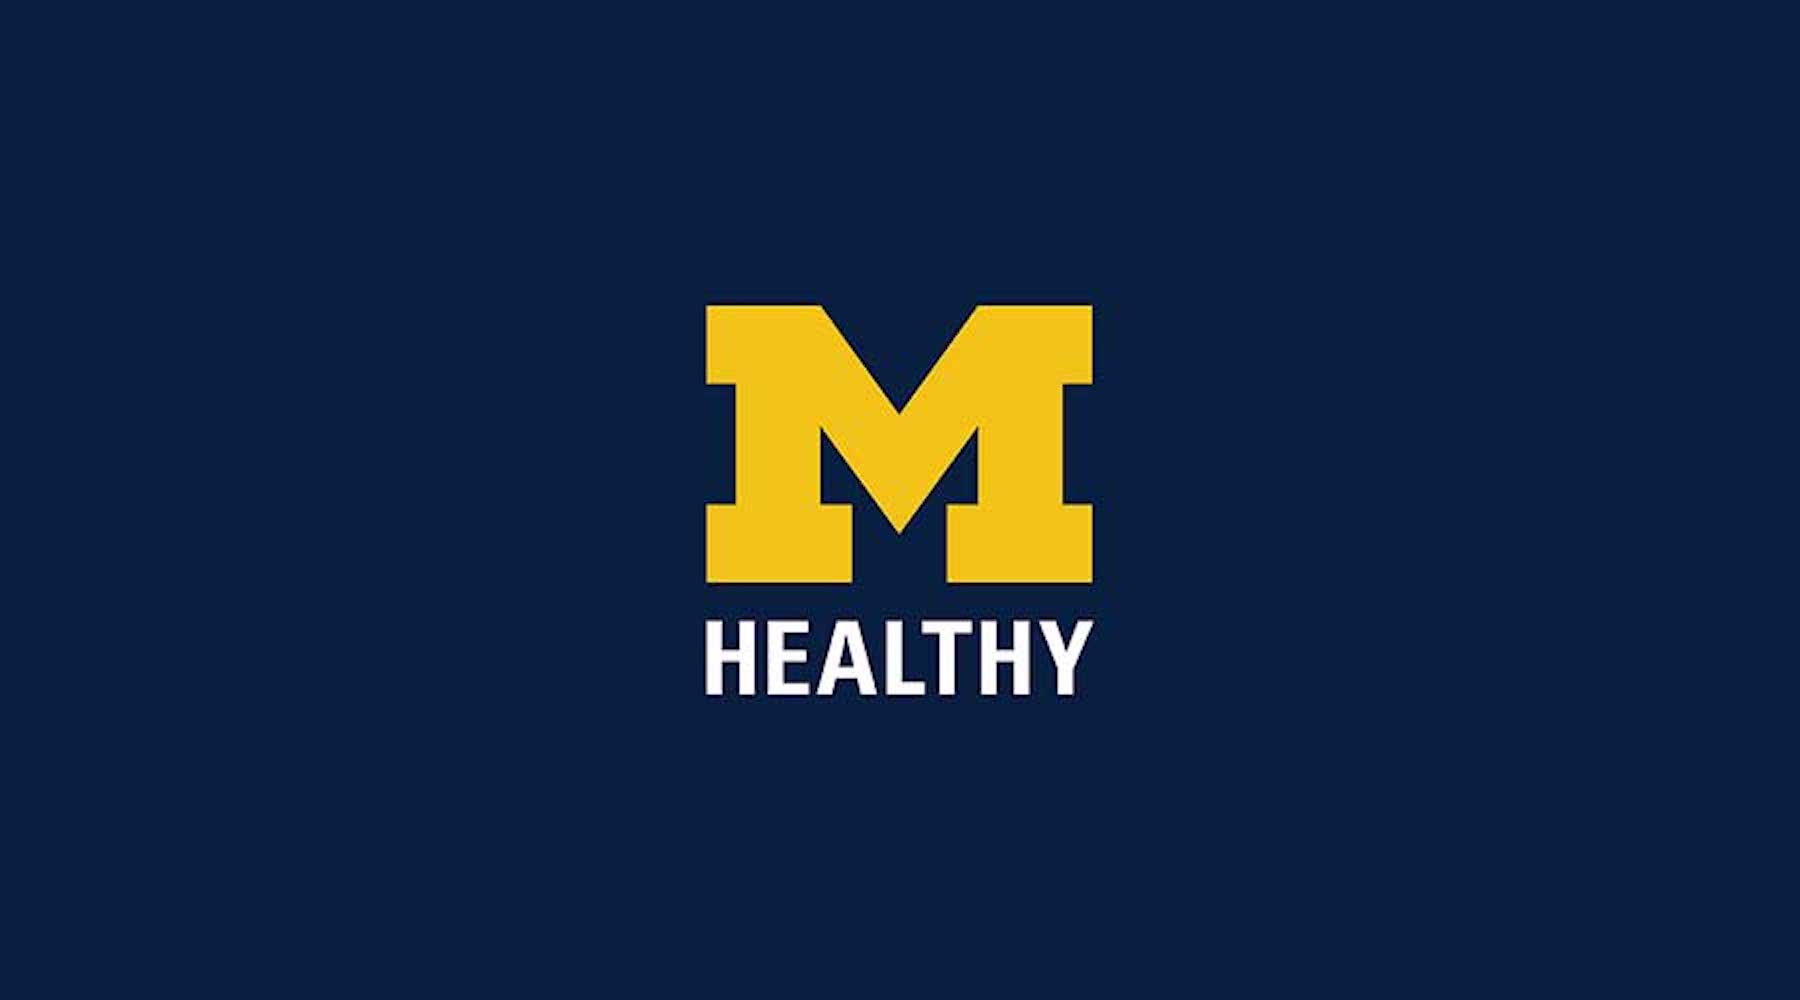 M Healthy logo